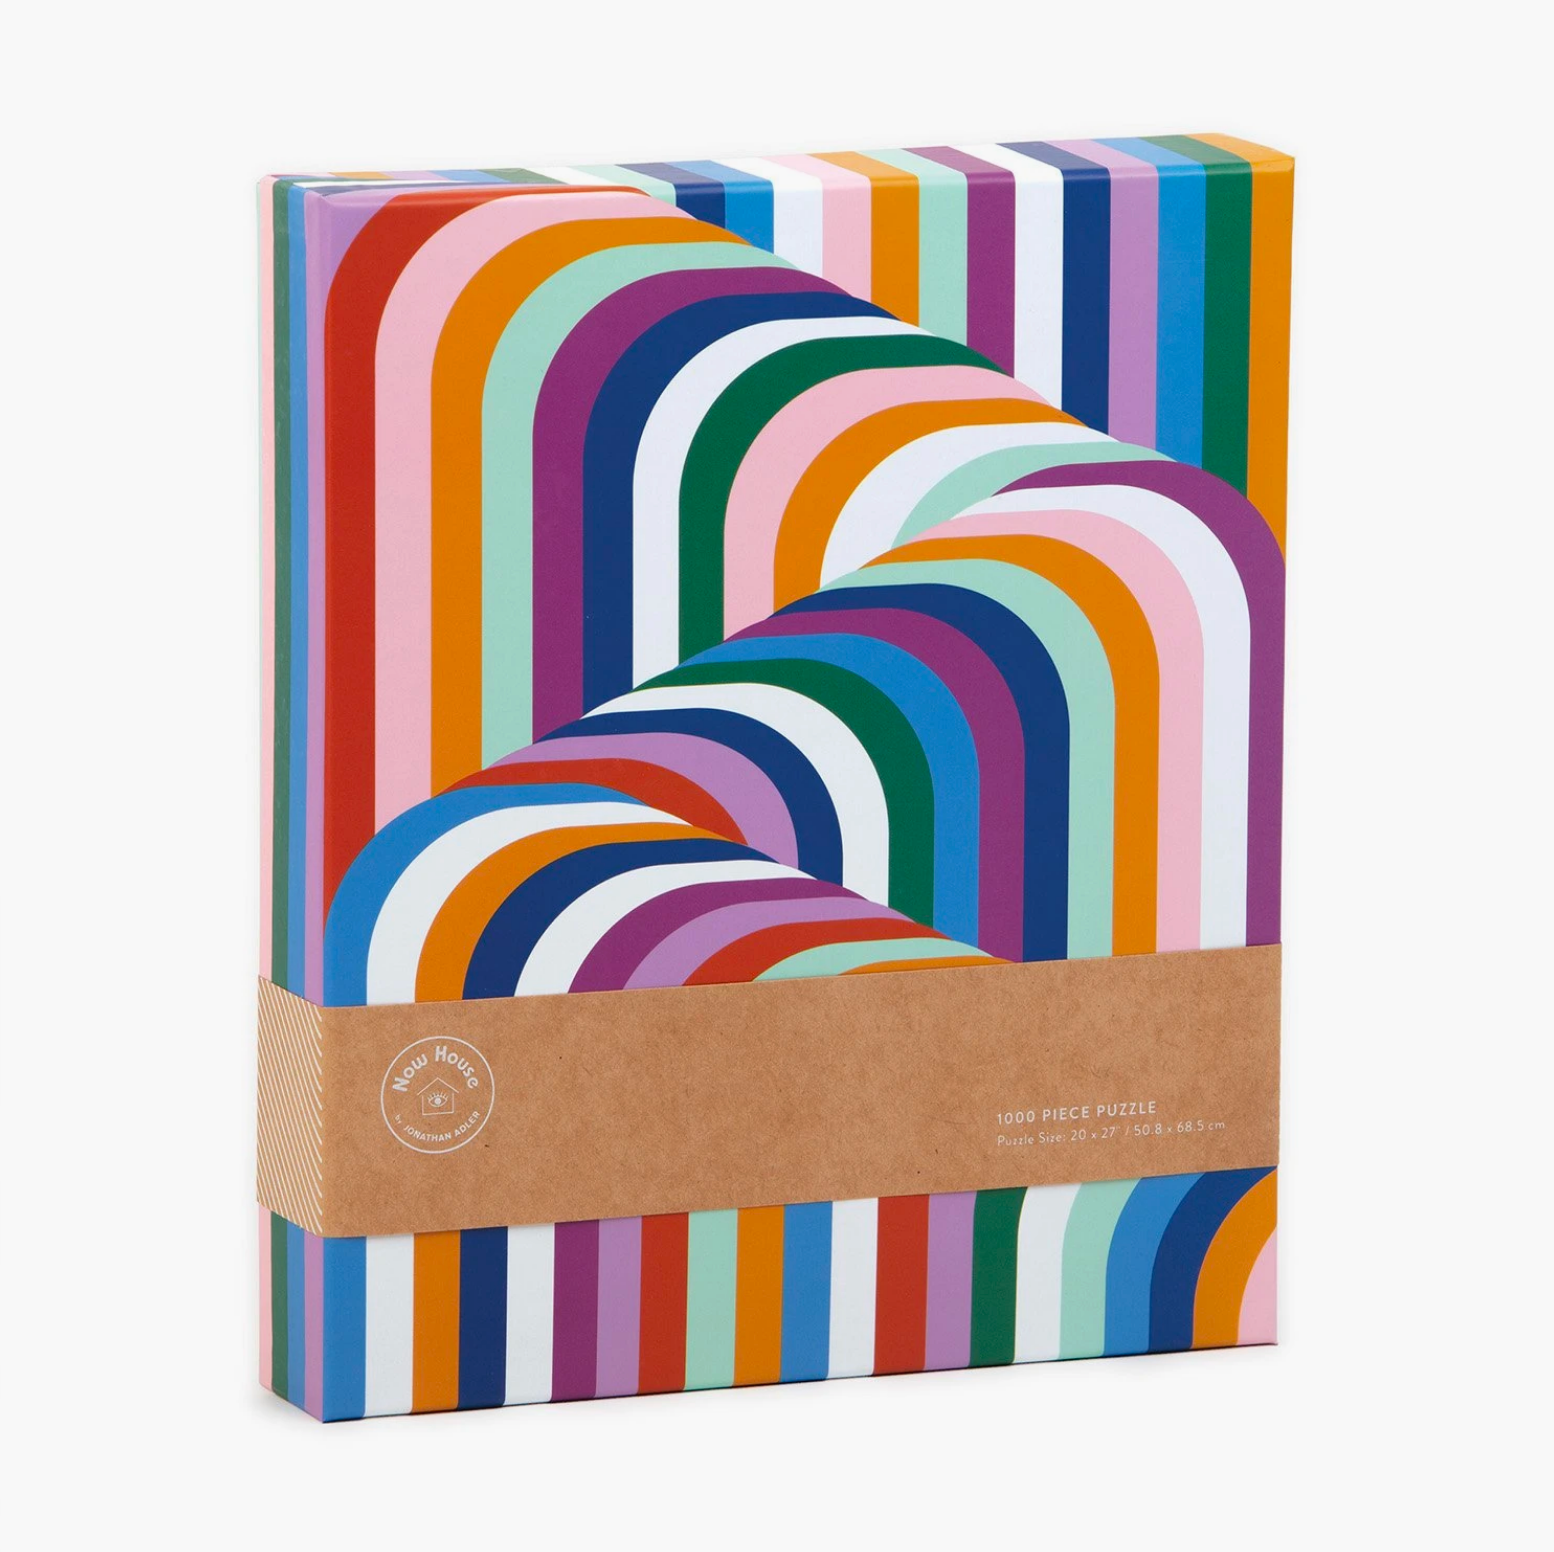 A colorful puzzle 1000 Piece Vertigo Puzzle designed by Jonathan Adler